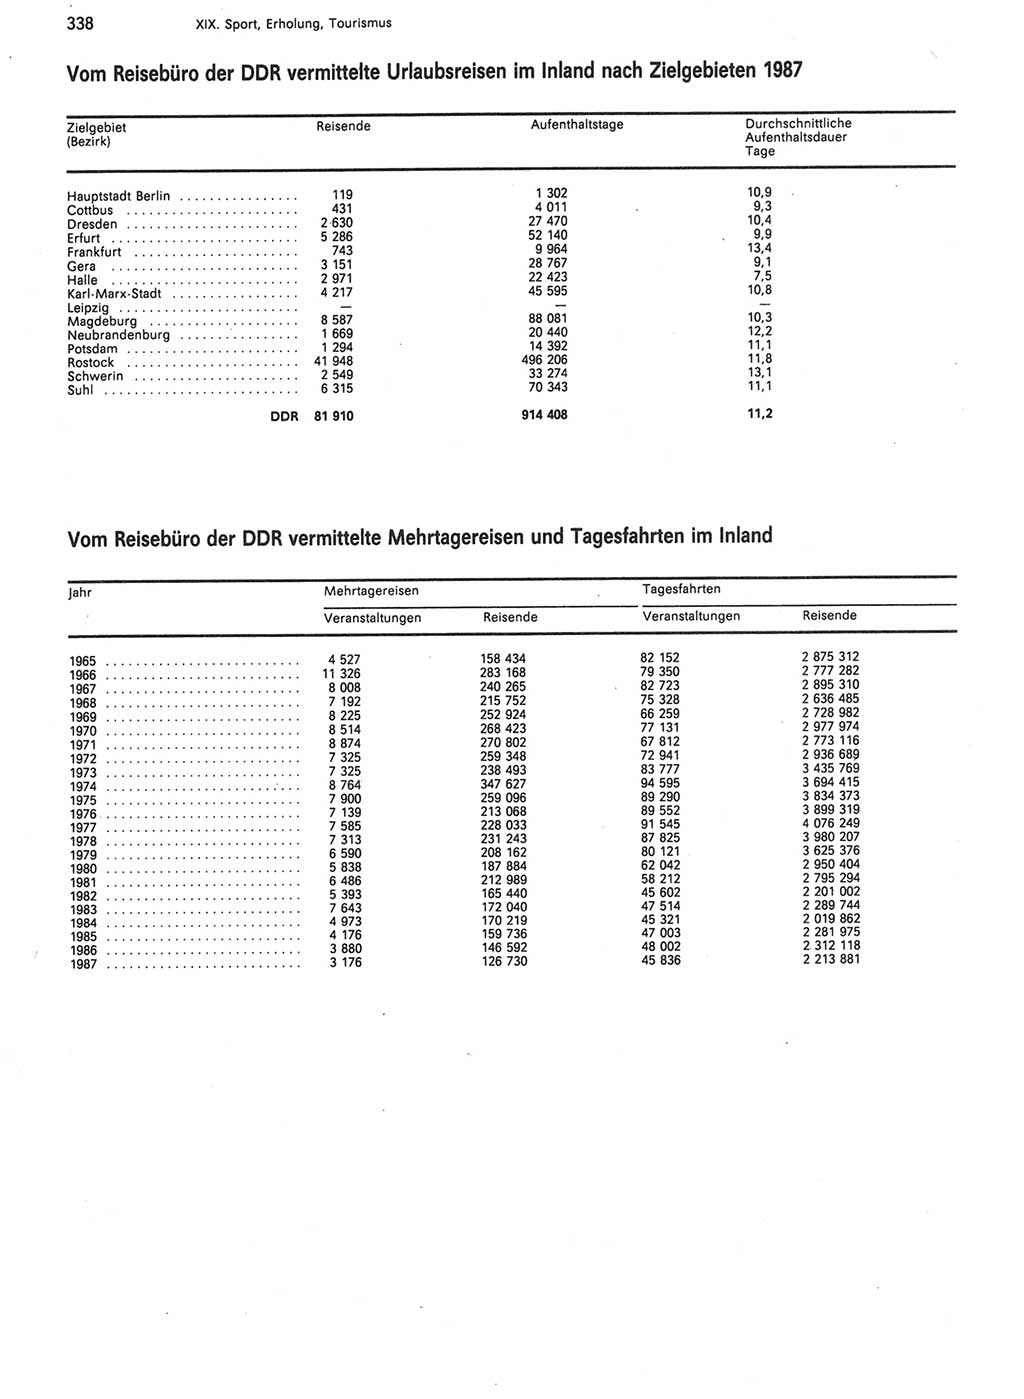 Statistisches Jahrbuch der Deutschen Demokratischen Republik (DDR) 1988, Seite 338 (Stat. Jb. DDR 1988, S. 338)